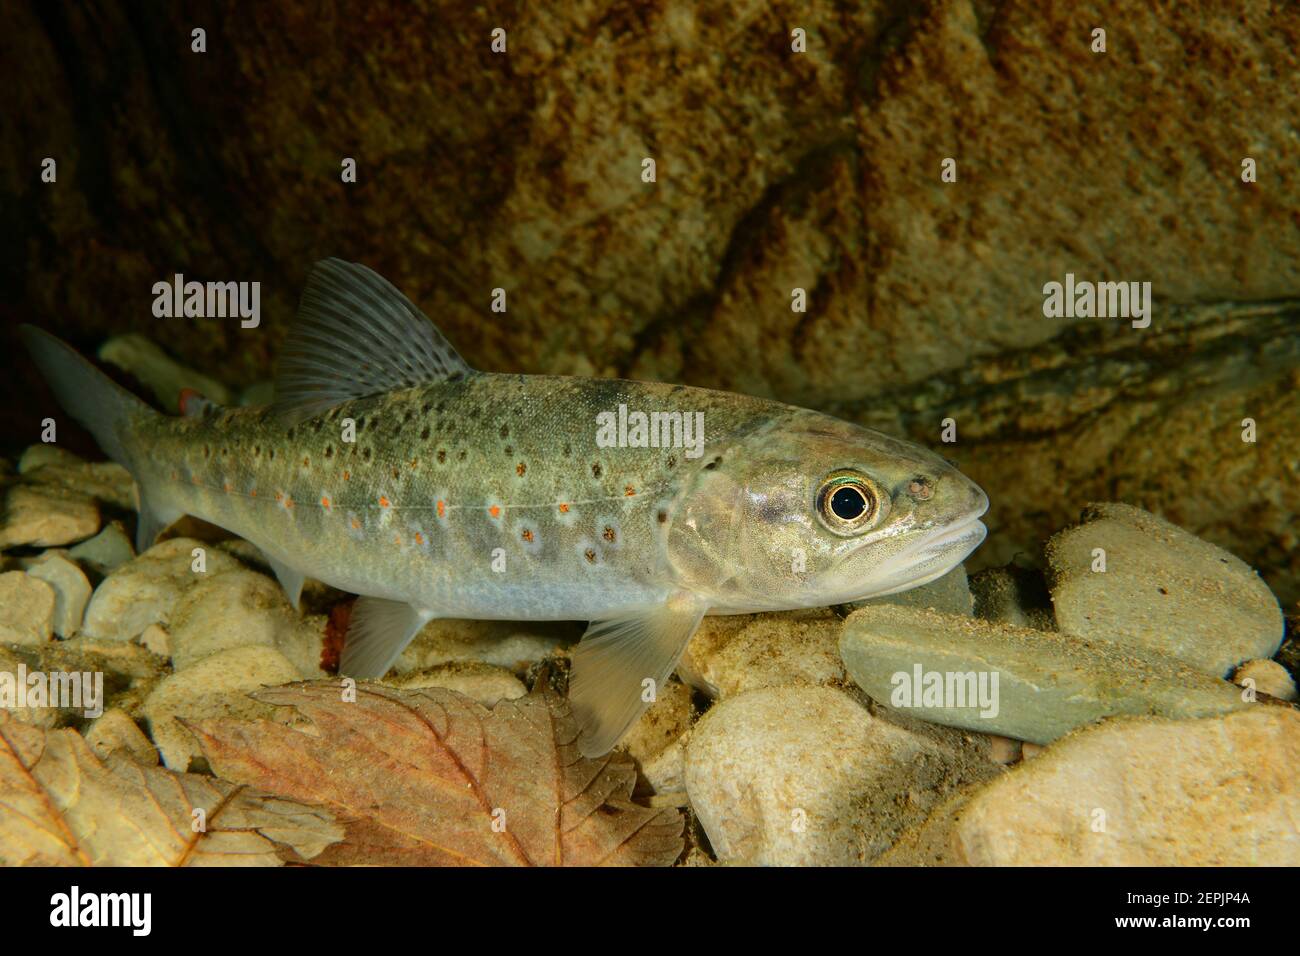 Salmo trutta fario, Brown trout, River Taugl, Kuchl, Austria Stock Photo